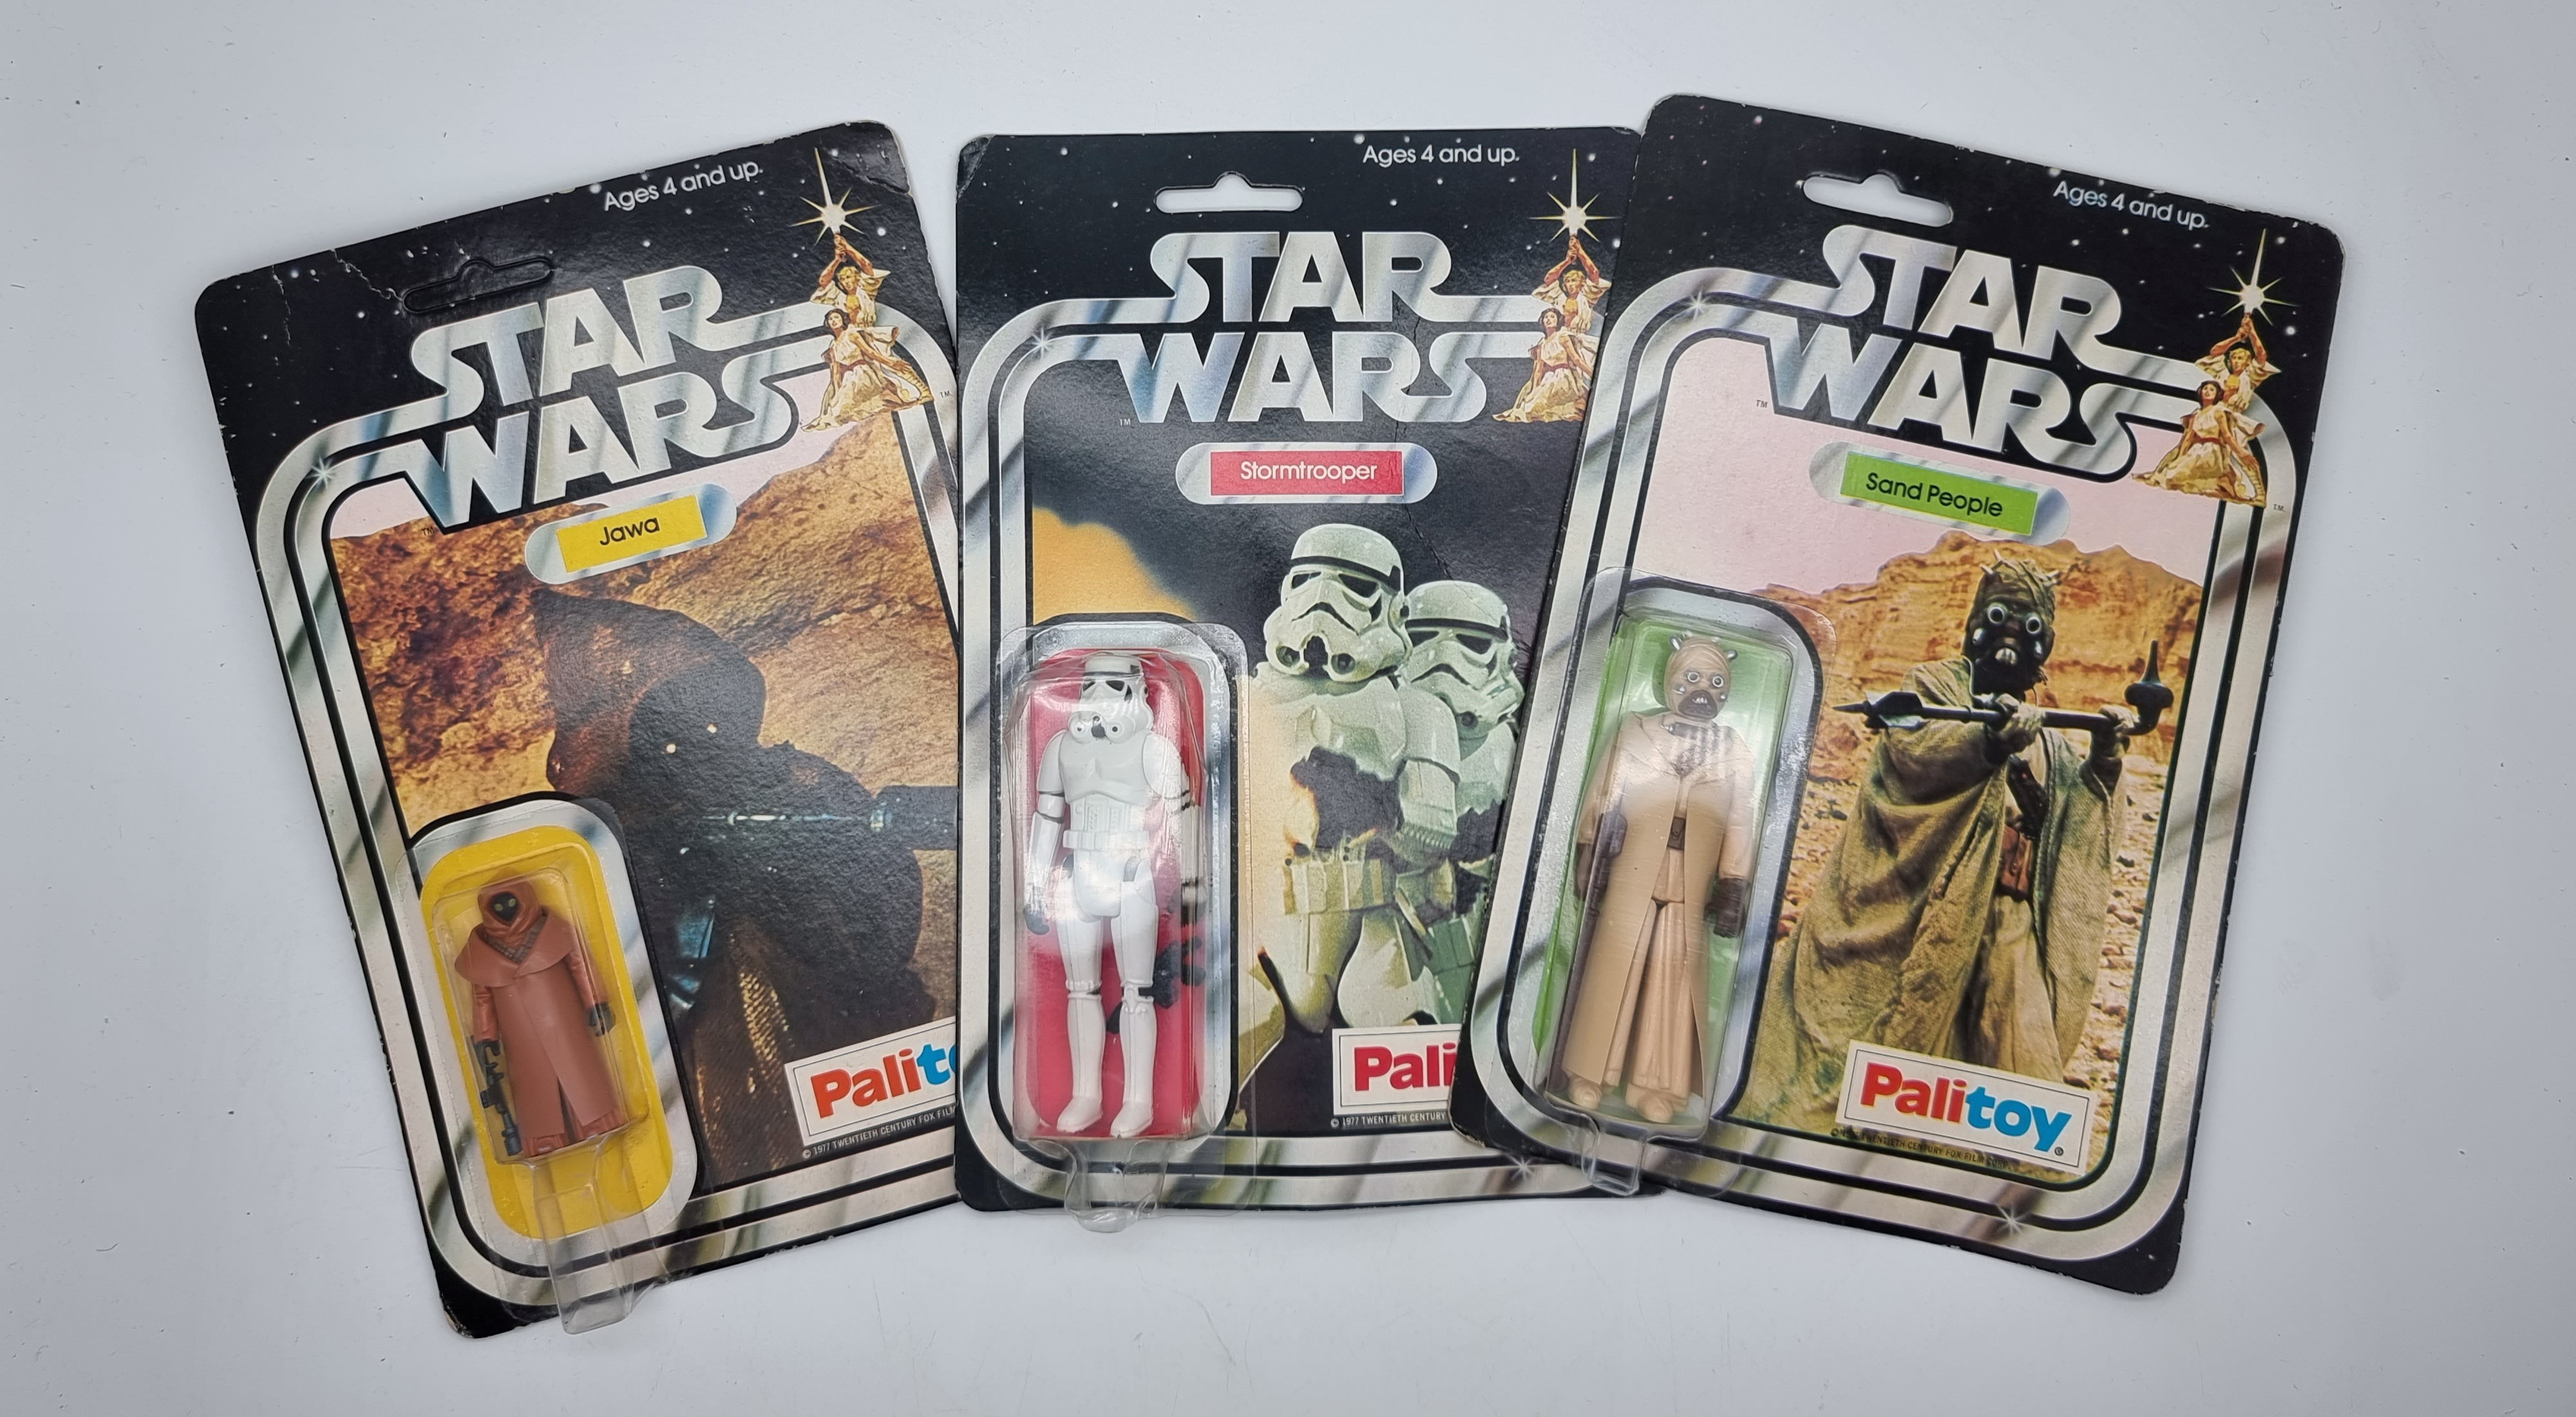 Star Wars-Figuren haben einen hohen Sammlerwert und für seltene Gegenstände werden riesige Summen bezahlt